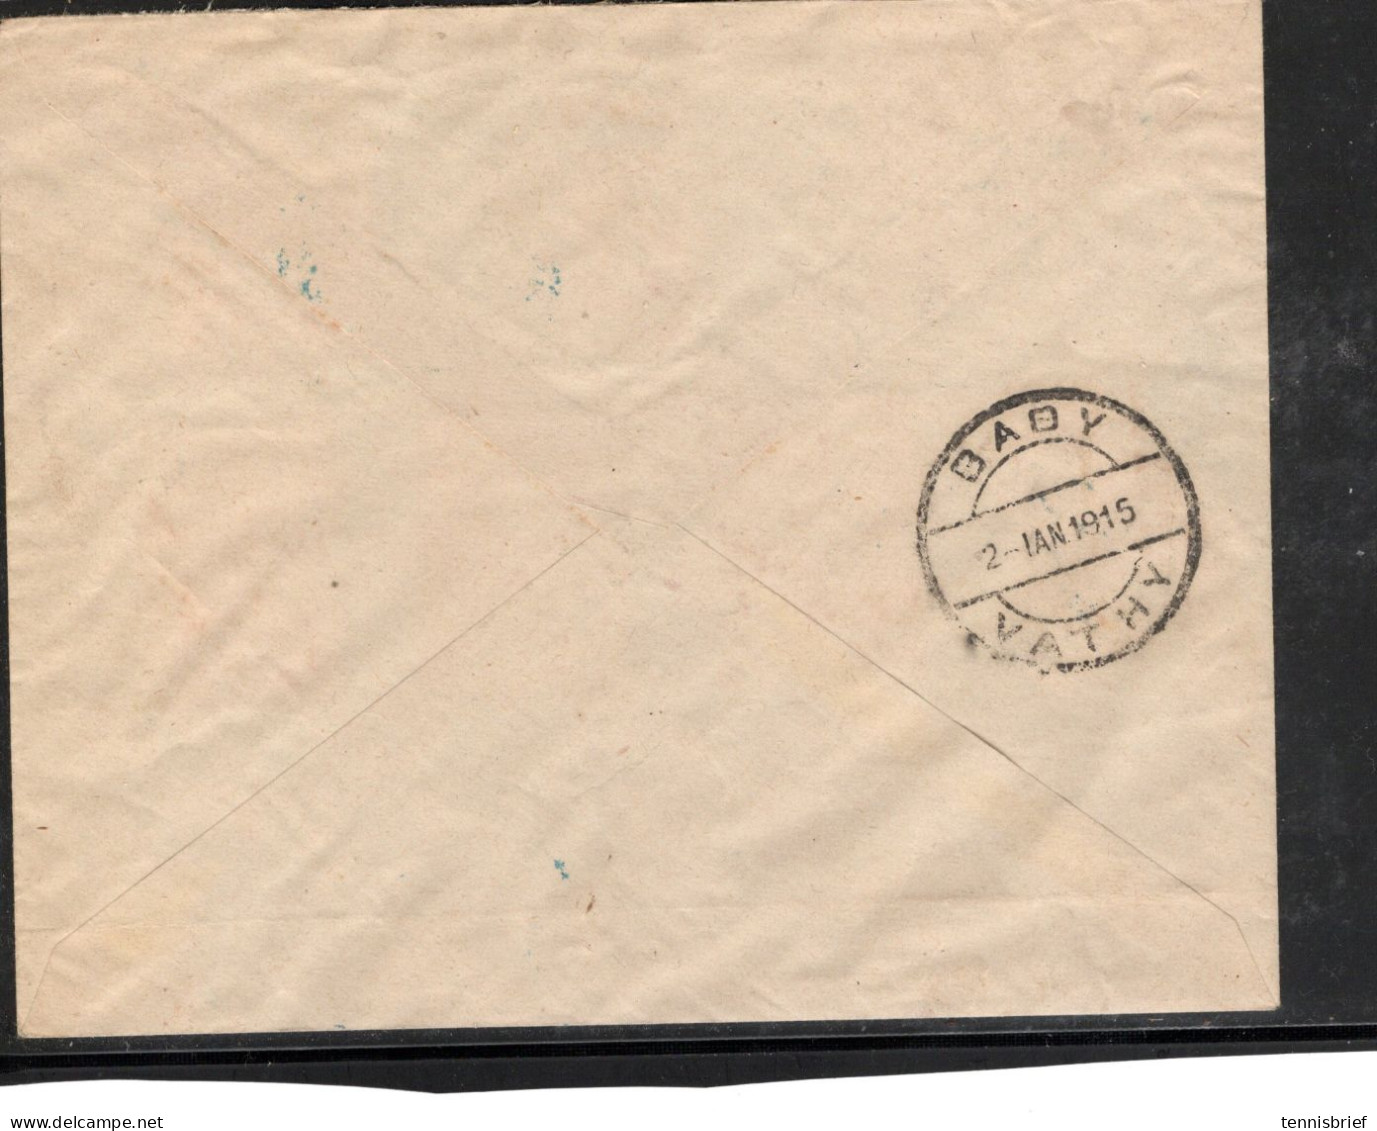 1915 , Complete Set Overprint , Scarce Blue Cancel " KARLOVSSI 1. Jan. 1915 "  Scarce Registered Label  ,ariv..   #1510 - Samos